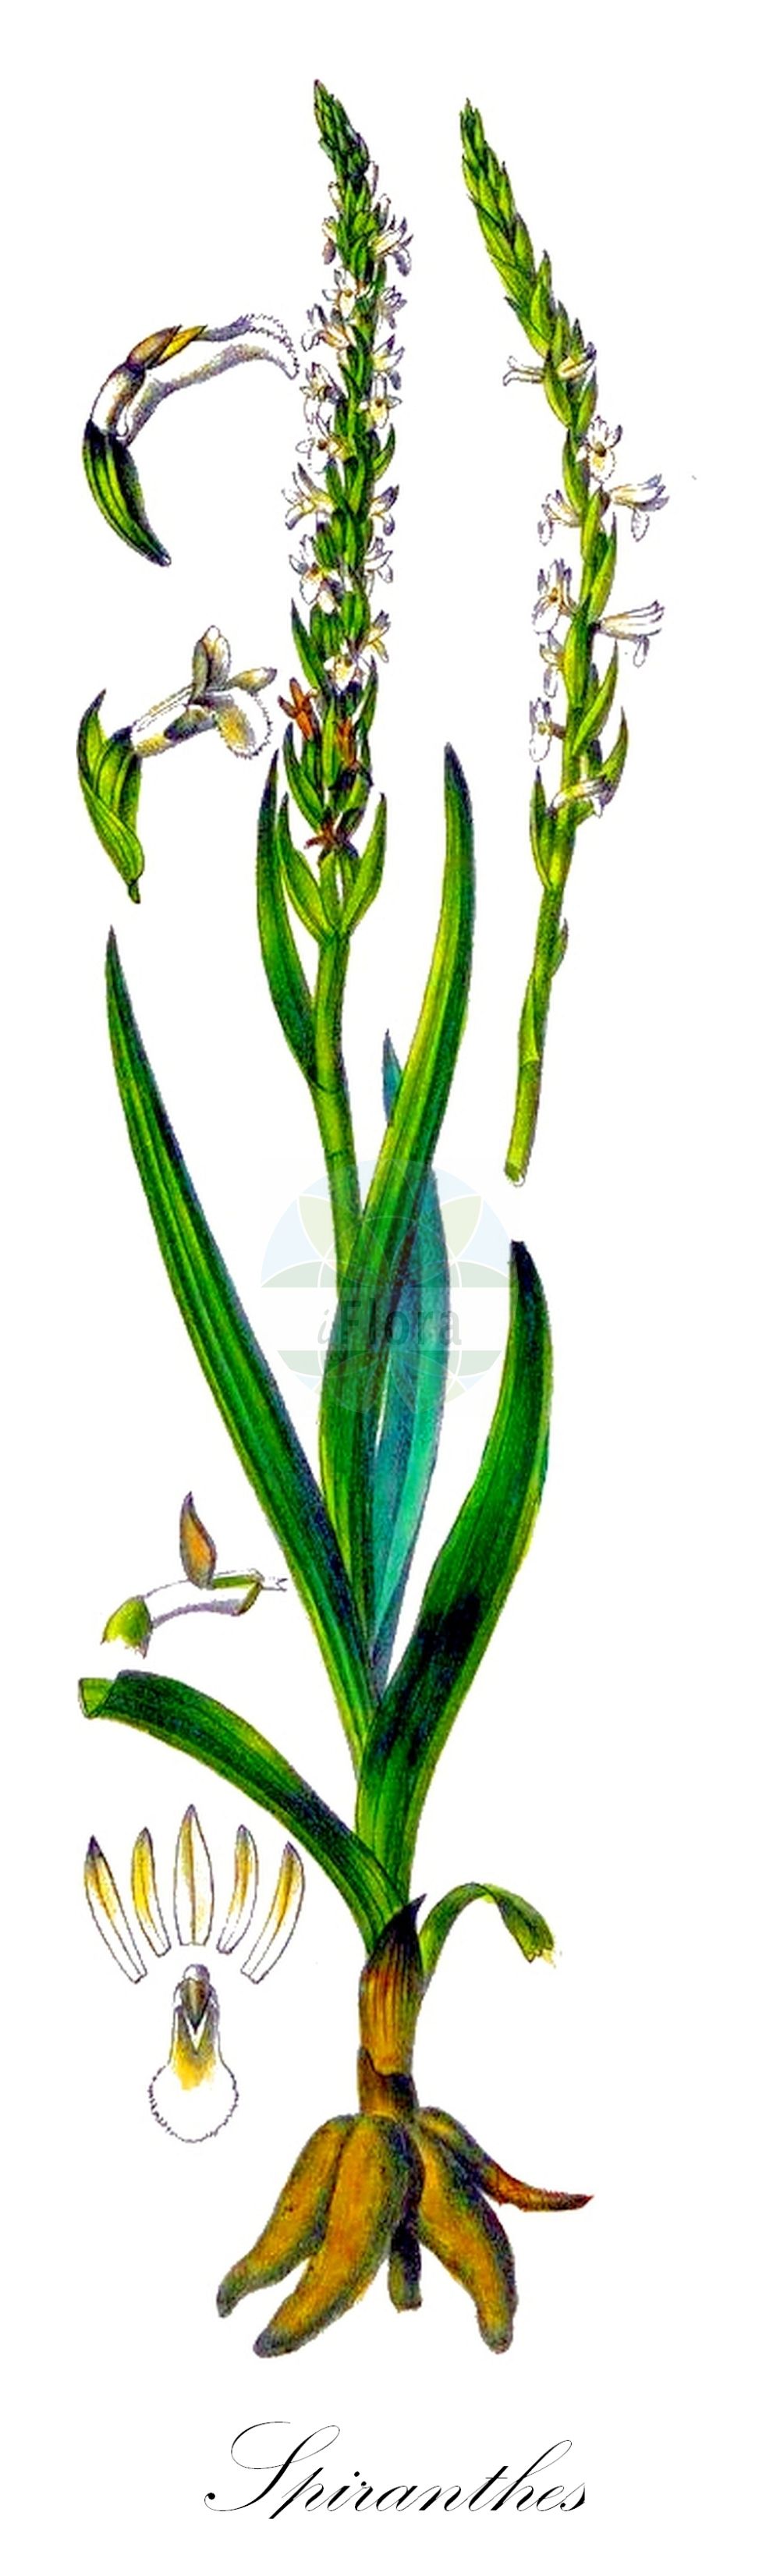 Historische Abbildung von Spiranthes aestivalis (Sommer-Wendelähre - Summer Lady's-tresses). Das Bild zeigt Blatt, Bluete, Frucht und Same. ---- Historical Drawing of Spiranthes aestivalis (Sommer-Wendelähre - Summer Lady's-tresses). The image is showing leaf, flower, fruit and seed.(Spiranthes aestivalis,Sommer-Wendelähre,Summer Lady's-tresses,Gyrostachys aestivalis,Neottia aestivalis,Ophrys aestiva,Ophrys aestivalis,Spiranthes aestivalis,Sommer-Wendelaehre,Sommer-Drehwurz,Sommer-Schraubenstaendel,Summer Lady's-tresses,Spiranthes,Wendelähre,Lady's Tresses,Orchidaceae,Knabenkrautgewächse,Orchid family,Blatt,Bluete,Frucht,Same,leaf,flower,fruit,seed,Barla (1868))